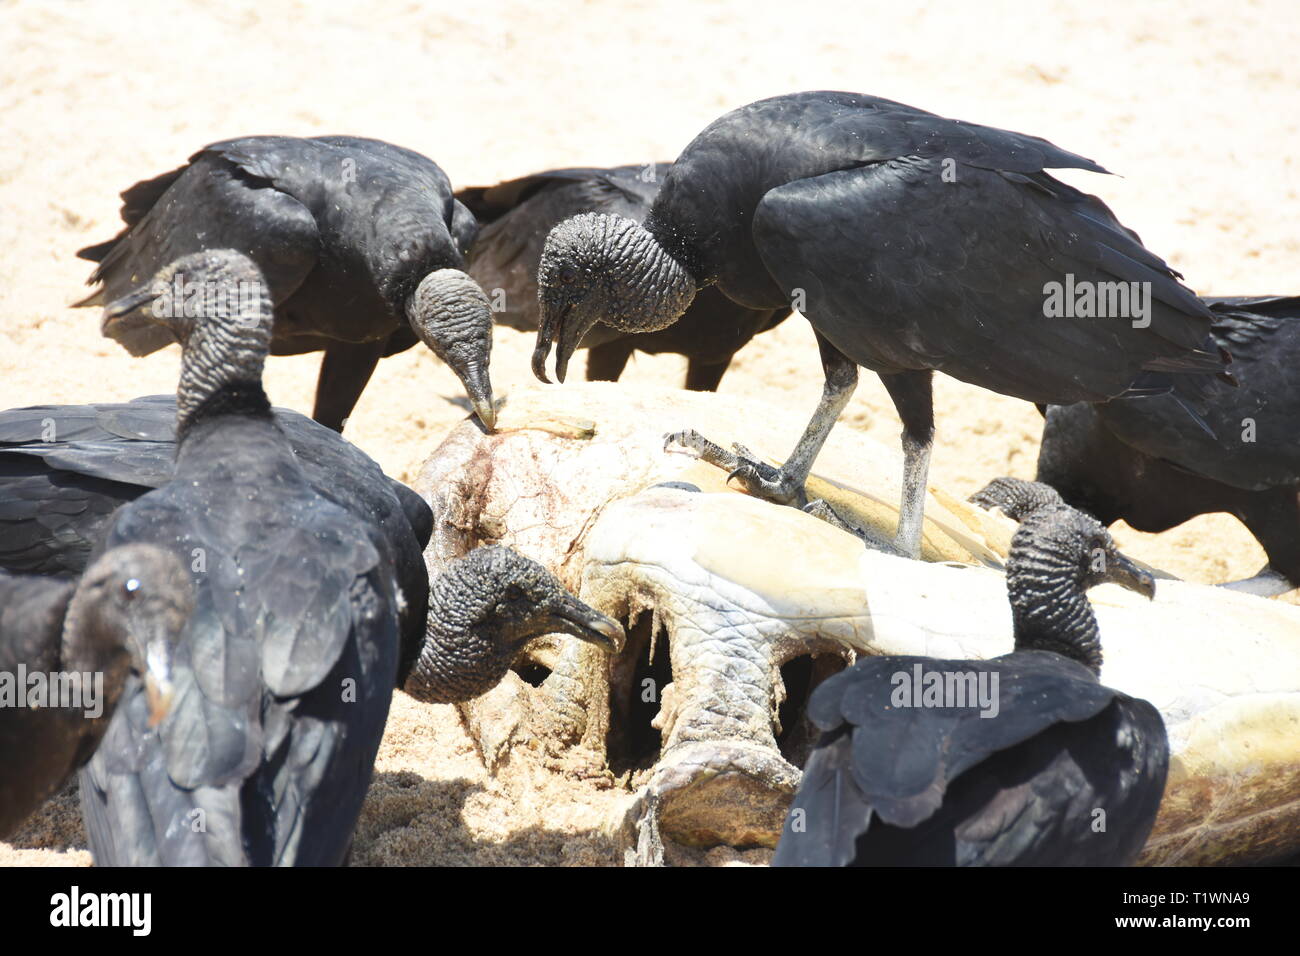 El buitre negro americano Coragyps atratus alimentándose de carroña en una playa Foto de stock